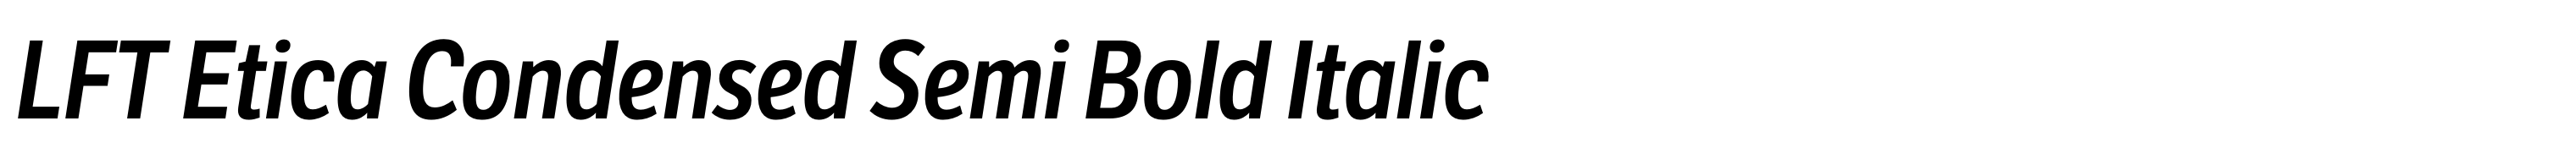 LFT Etica Condensed Semi Bold Italic